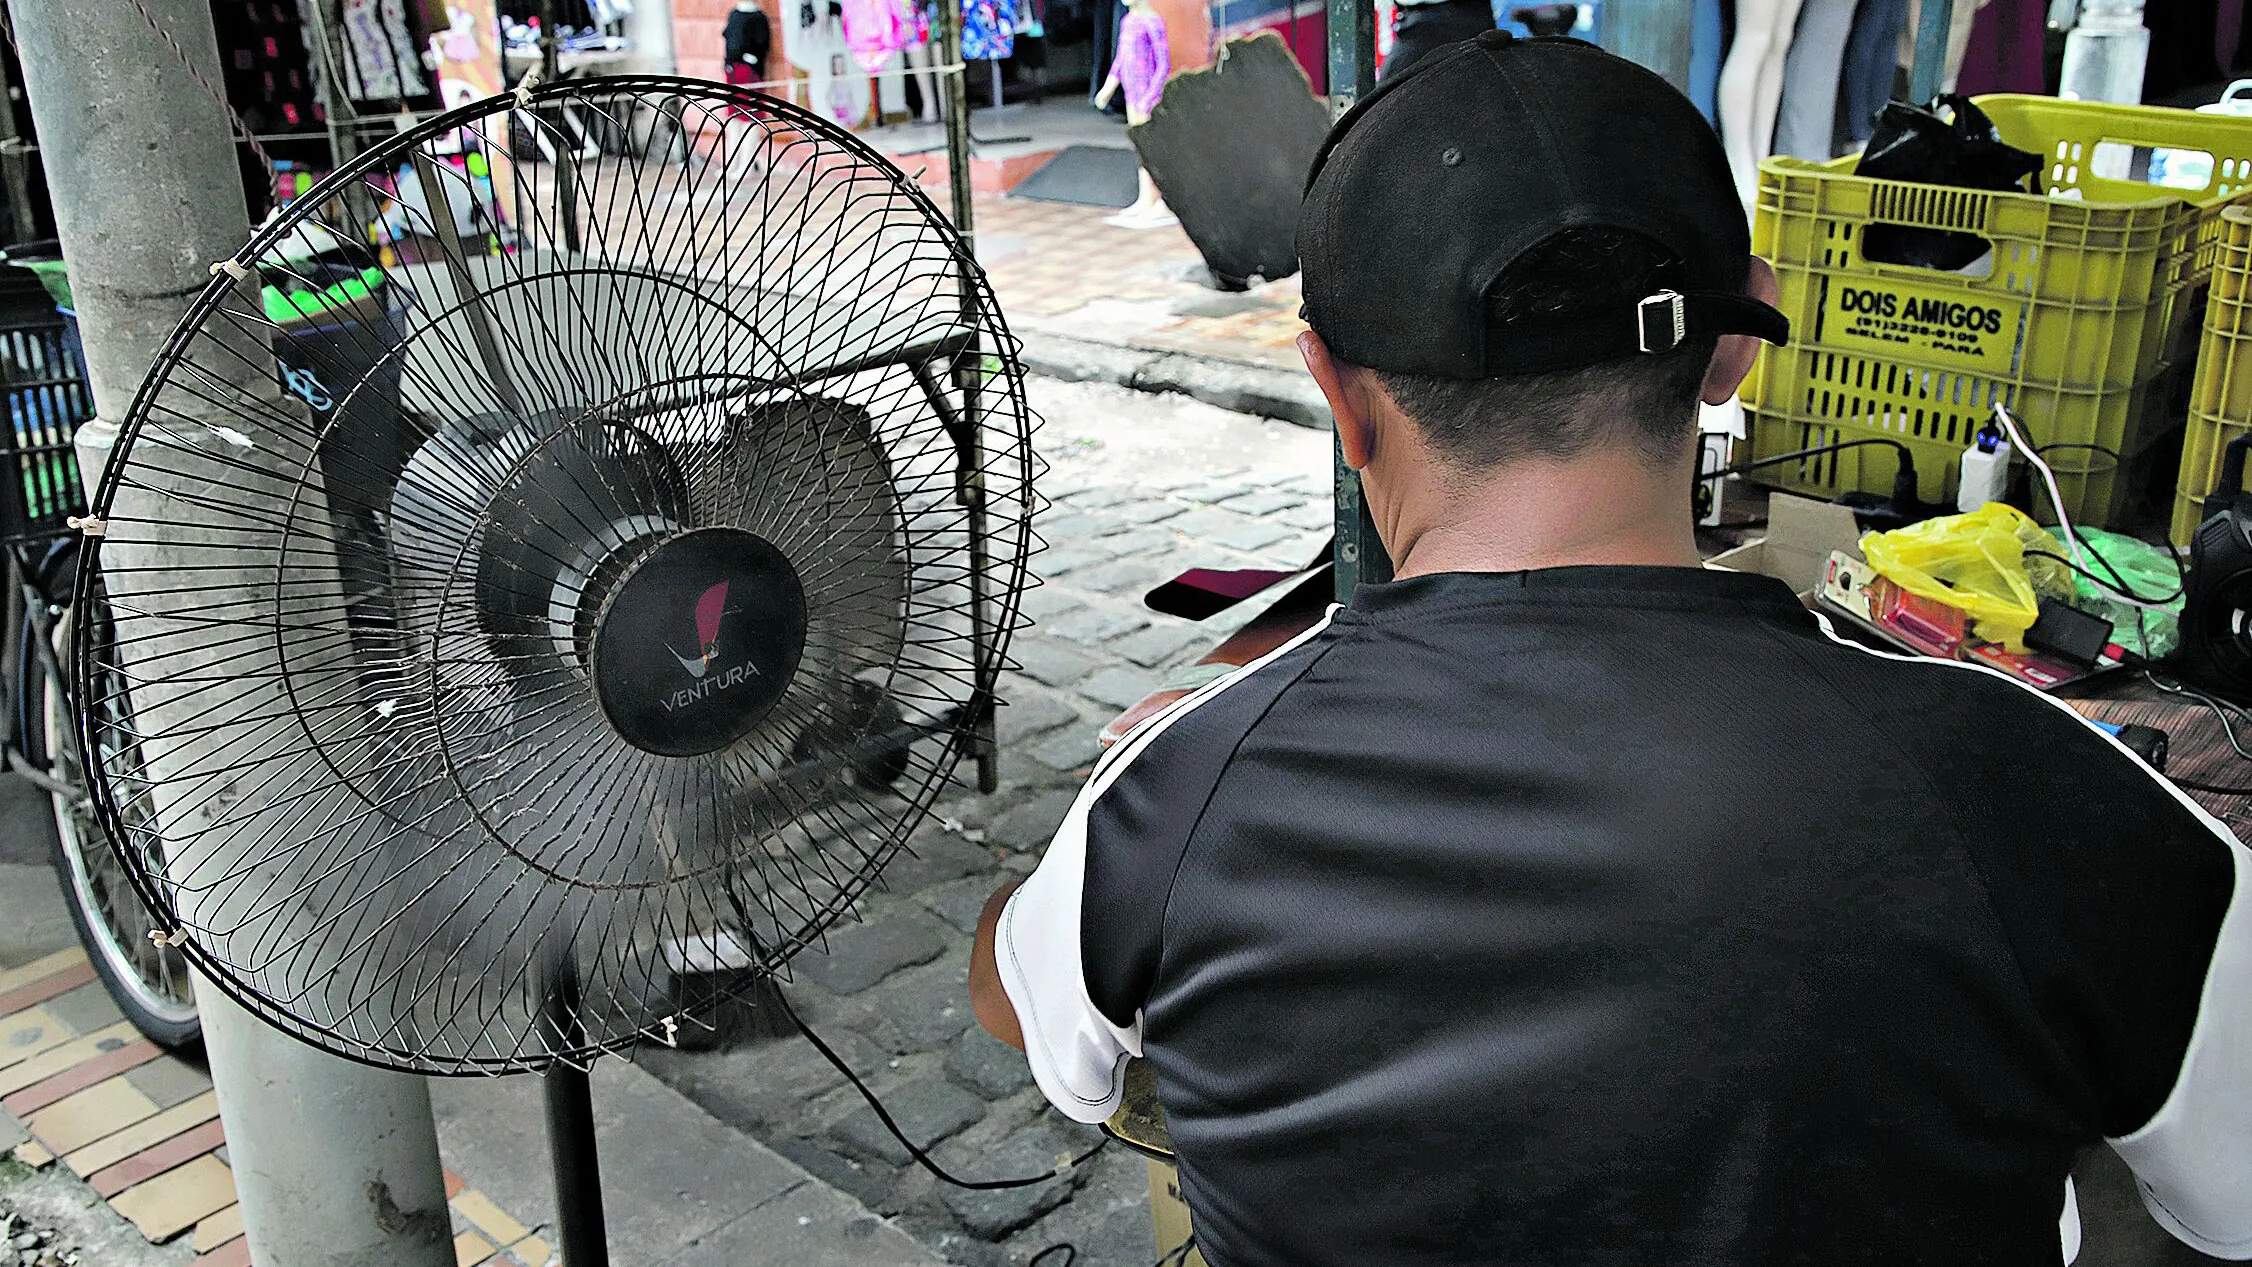 Pessoas usam de várias estratégias para reduzir o calor como o uso de ventiladores e bonés. Maria Almeida investe no protetor solar